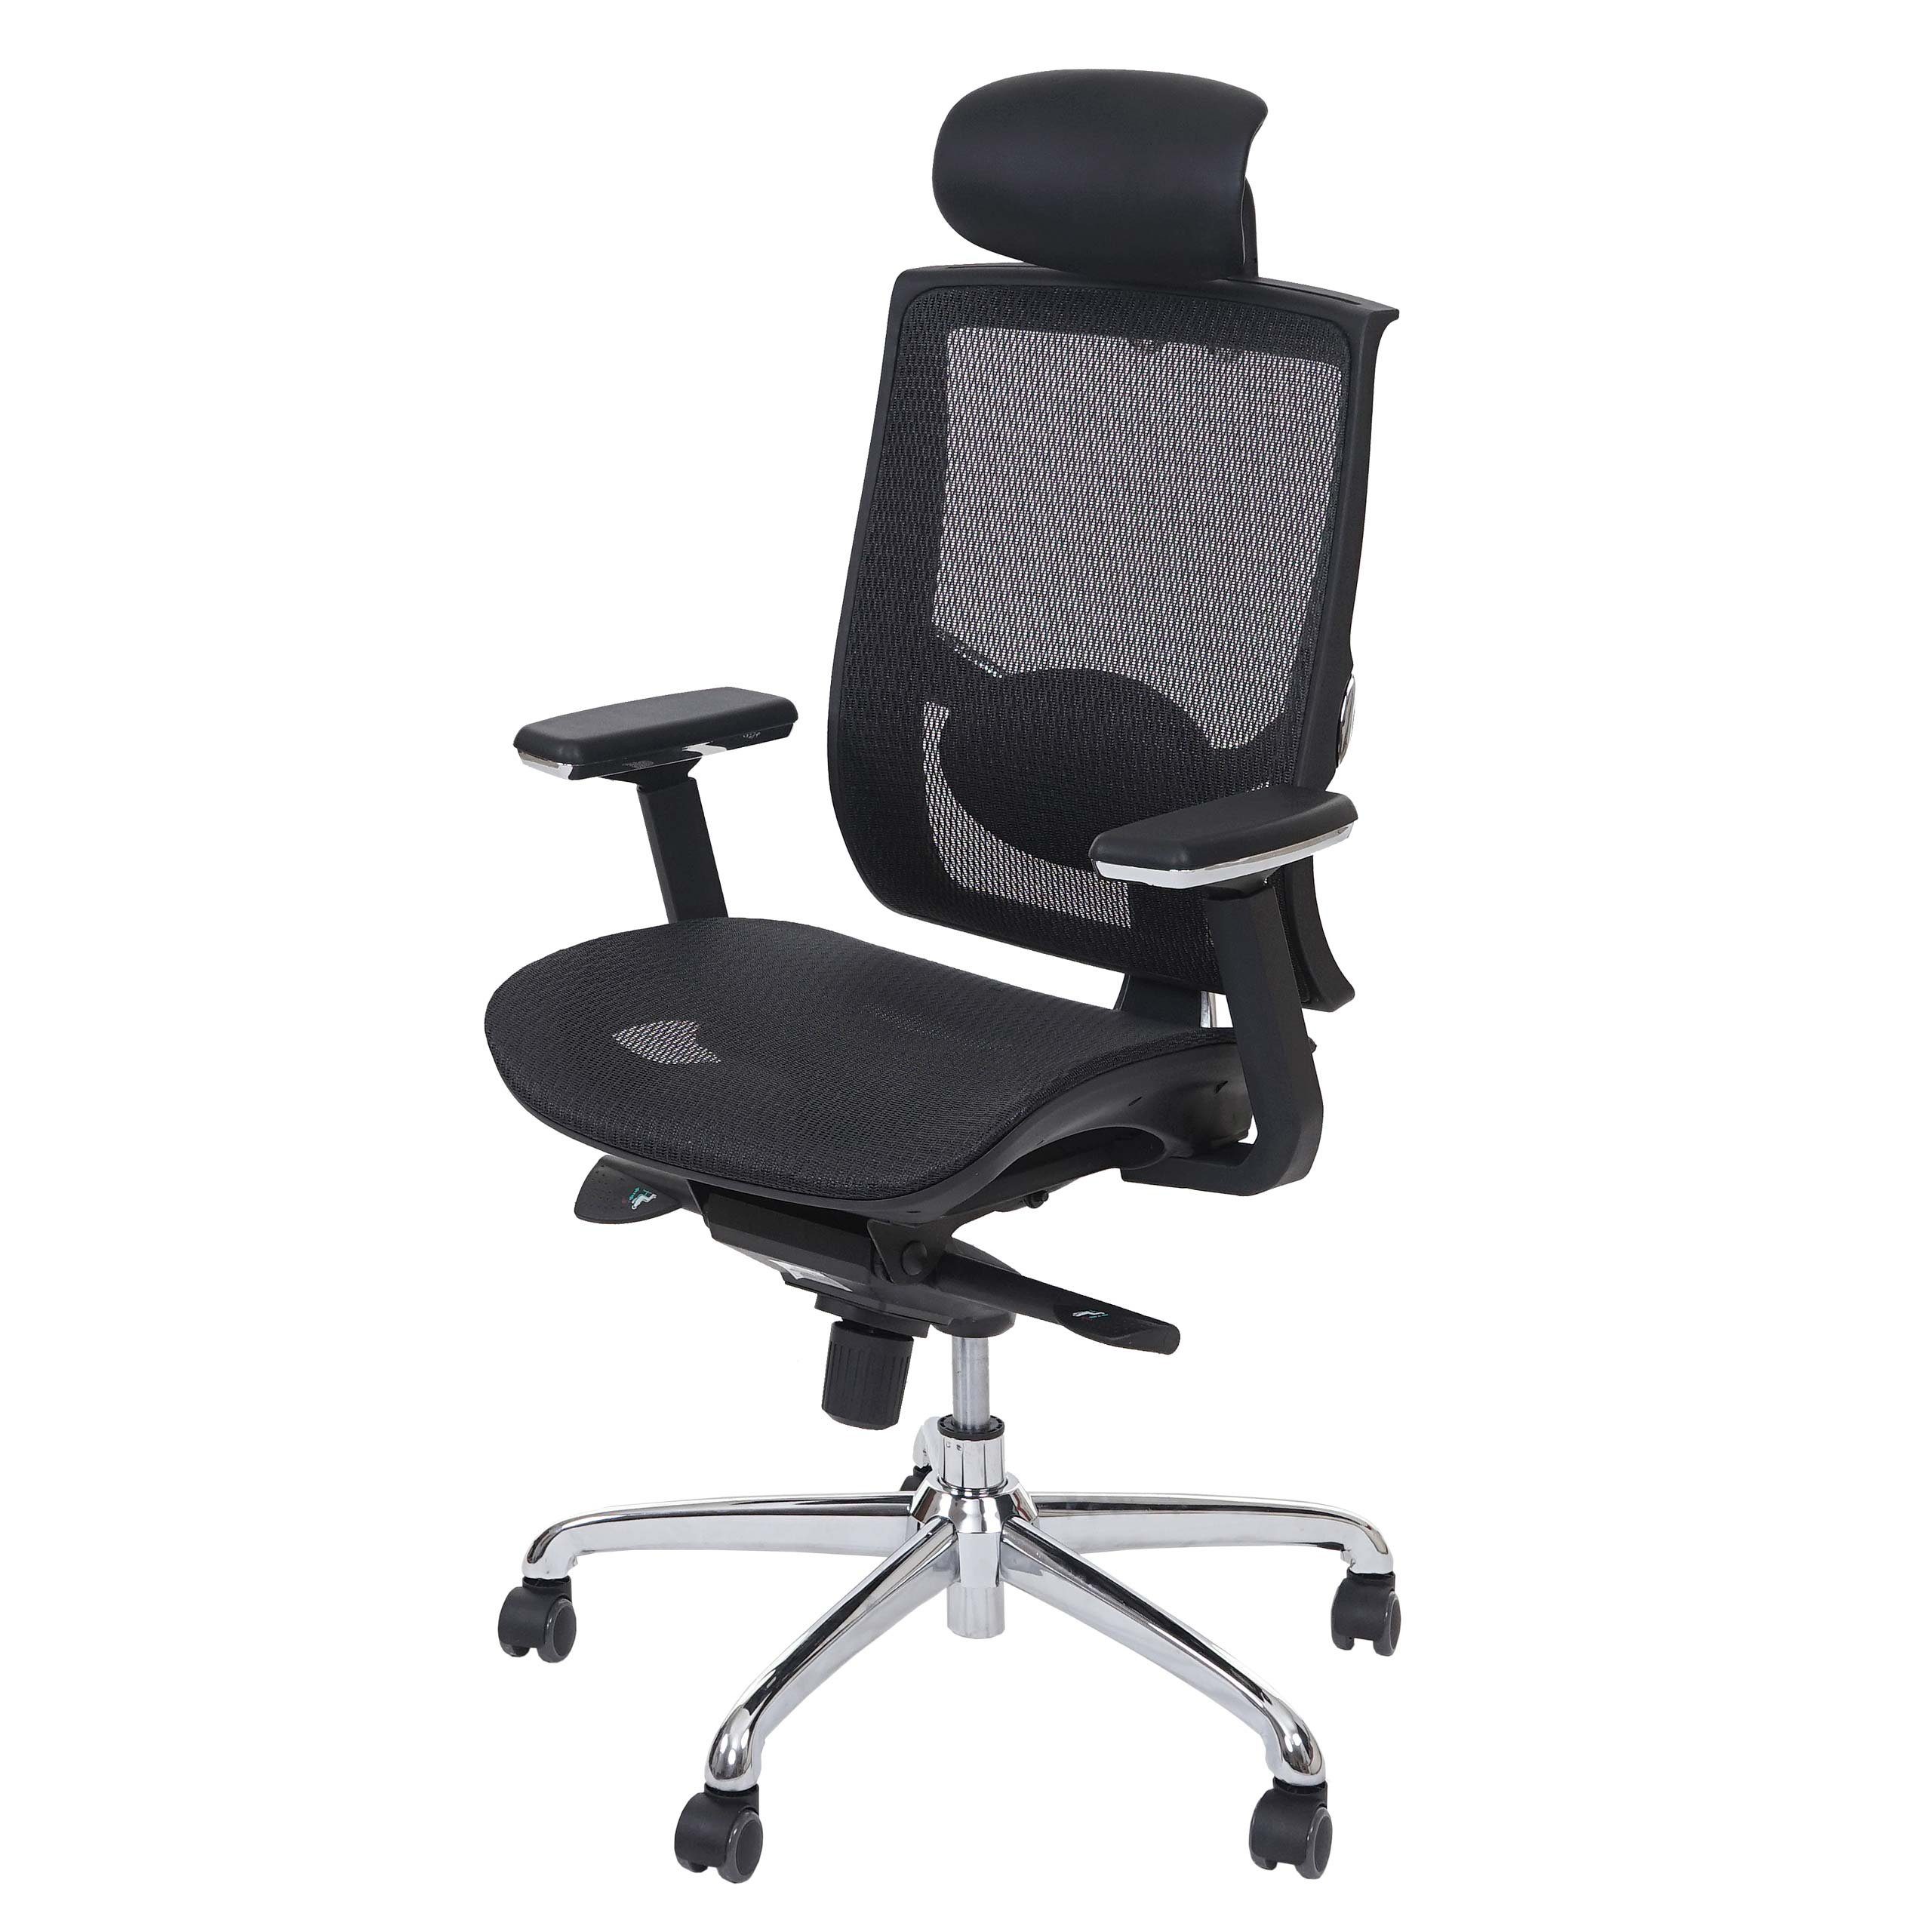 MCW Schreibtischstuhl MCW-A55, Luftzirkulation am Rücken, Höhenverstellbare Sitzfläche und Kopfstütze